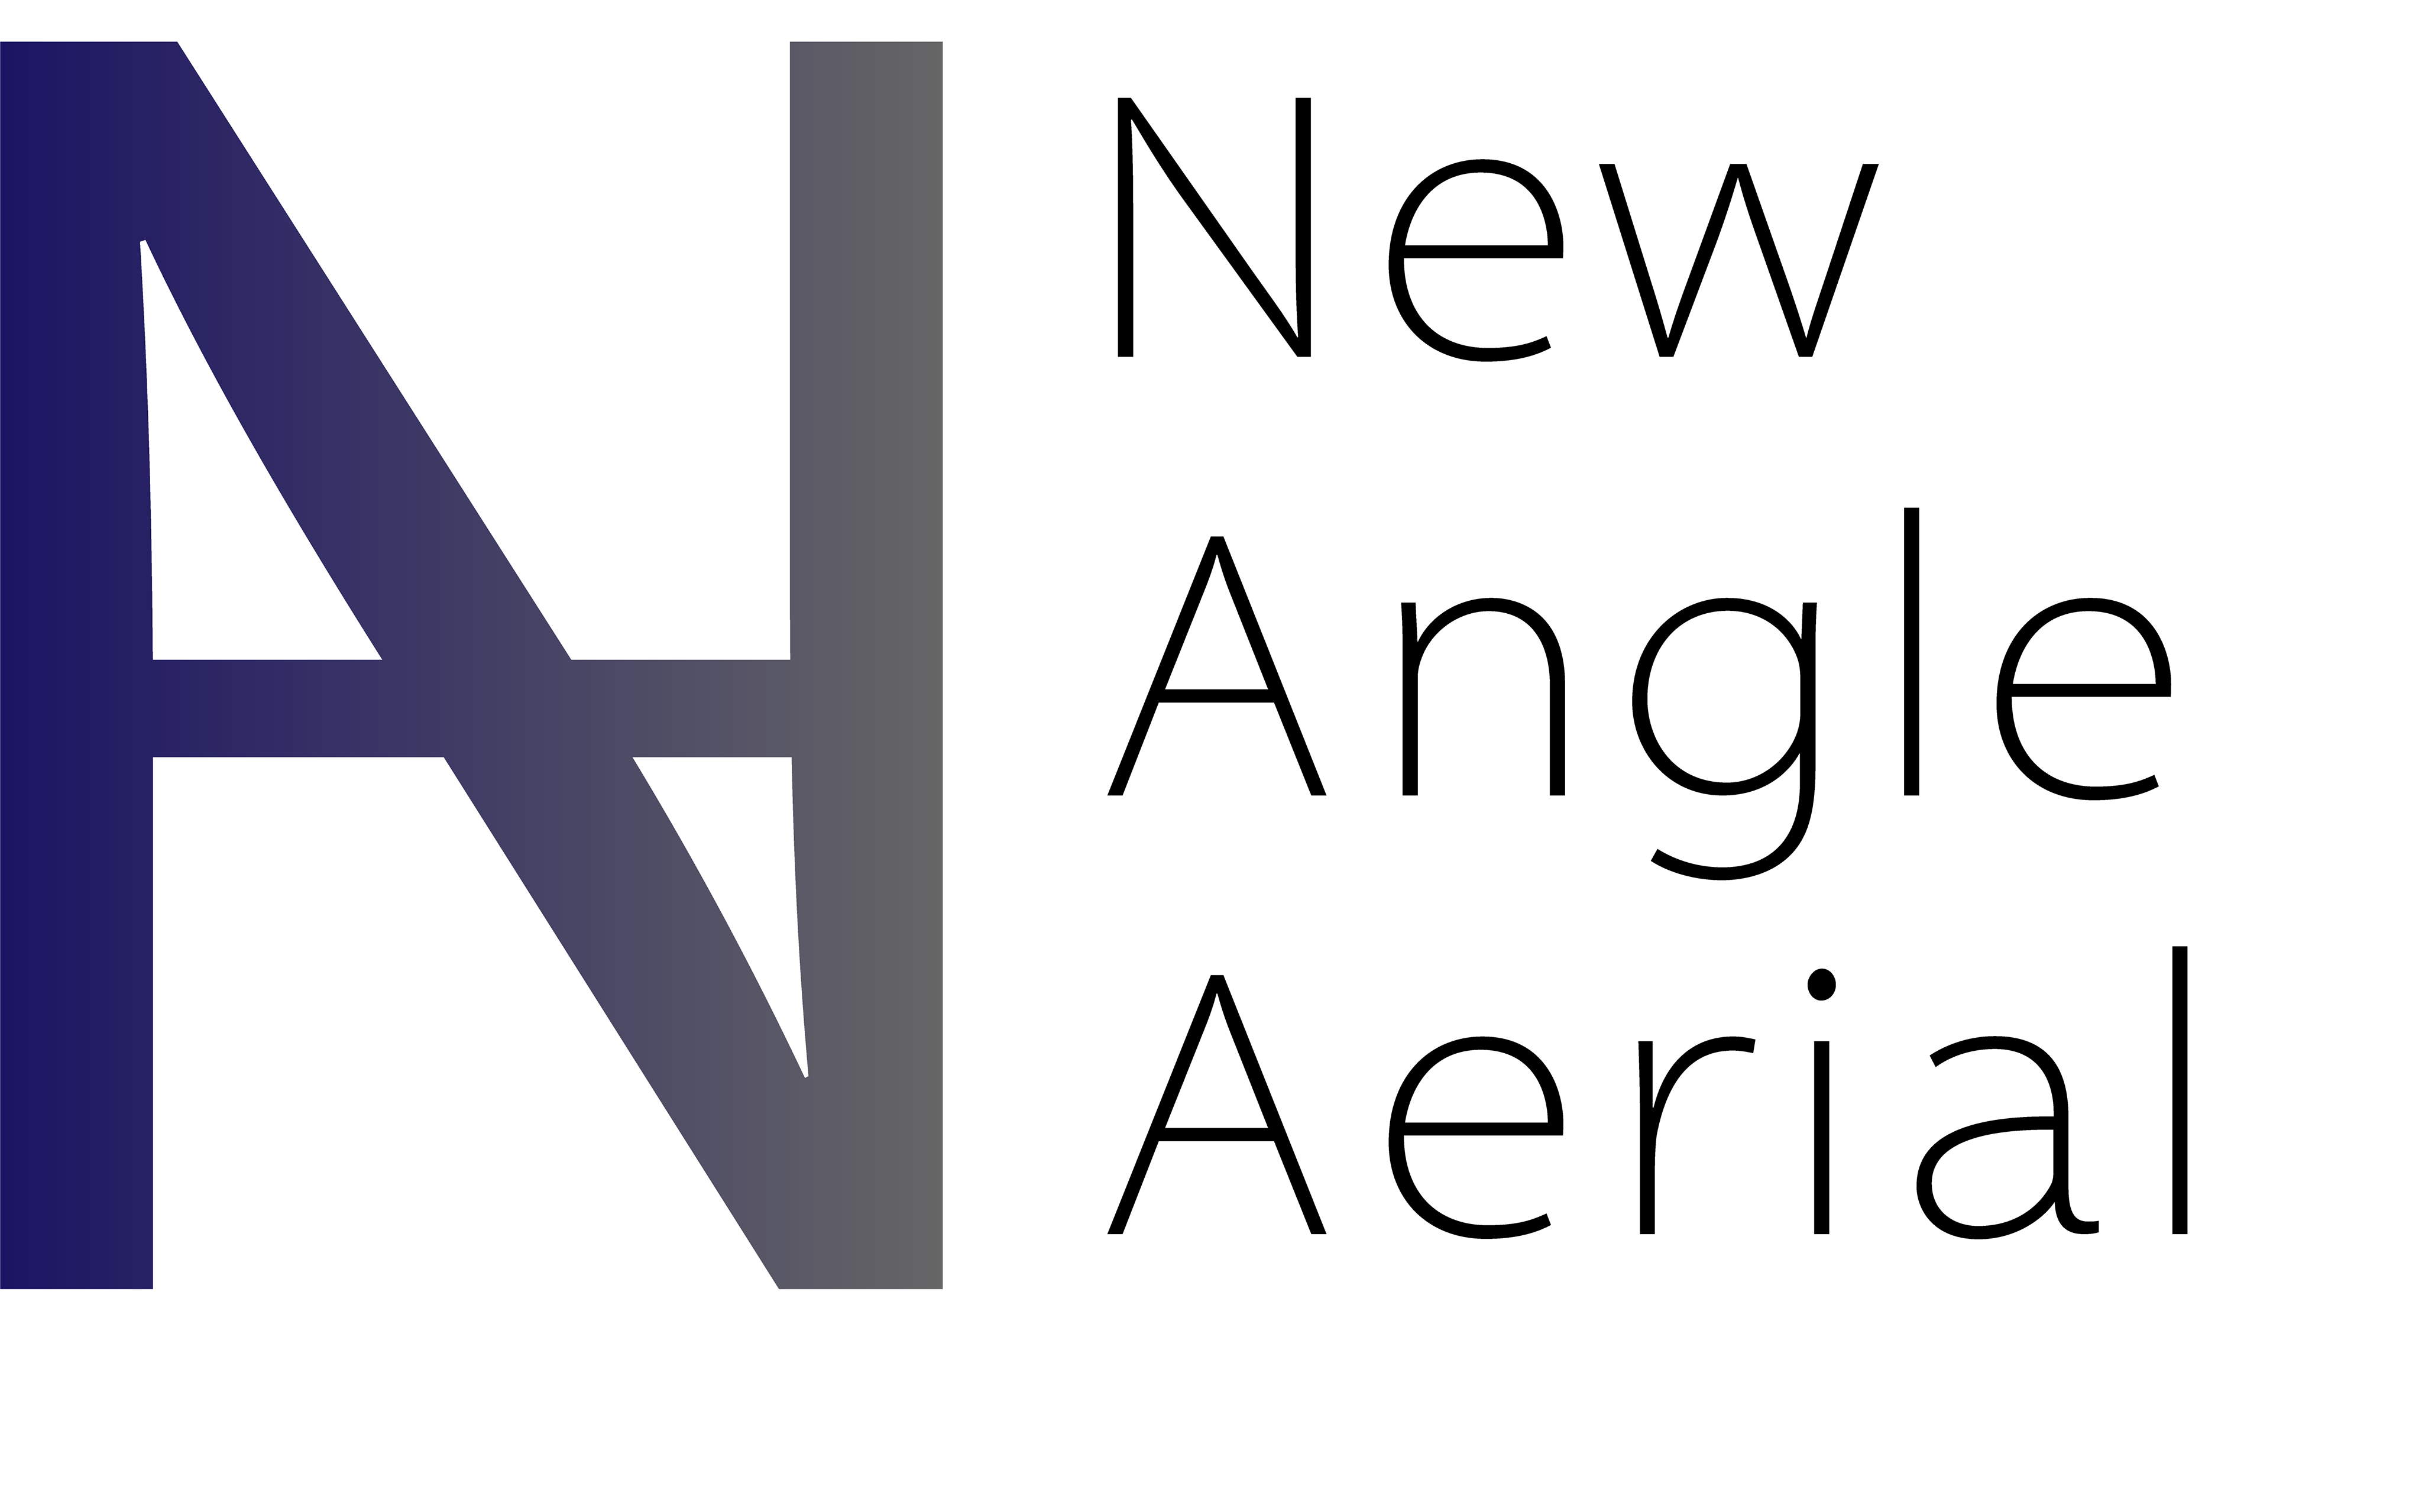 New Angle Logo